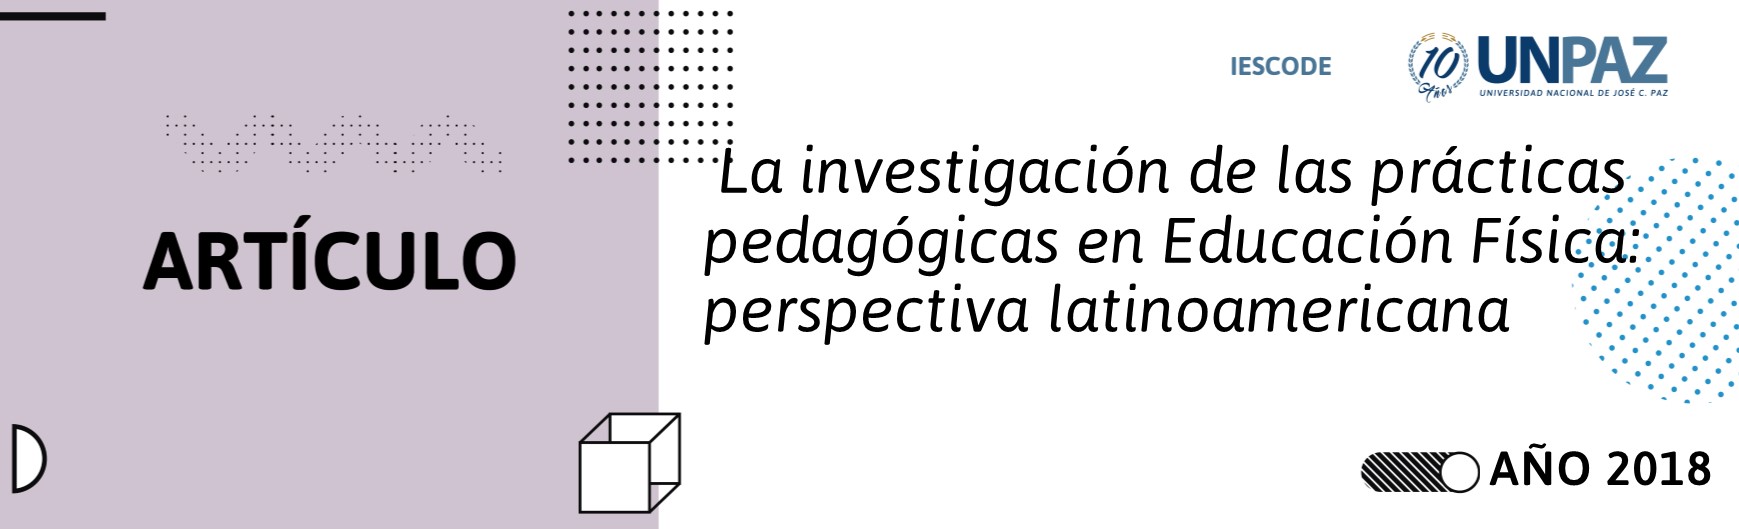 La investigación de las prácticas pedagógicas en Educación Física: perspectiva latinoamericana